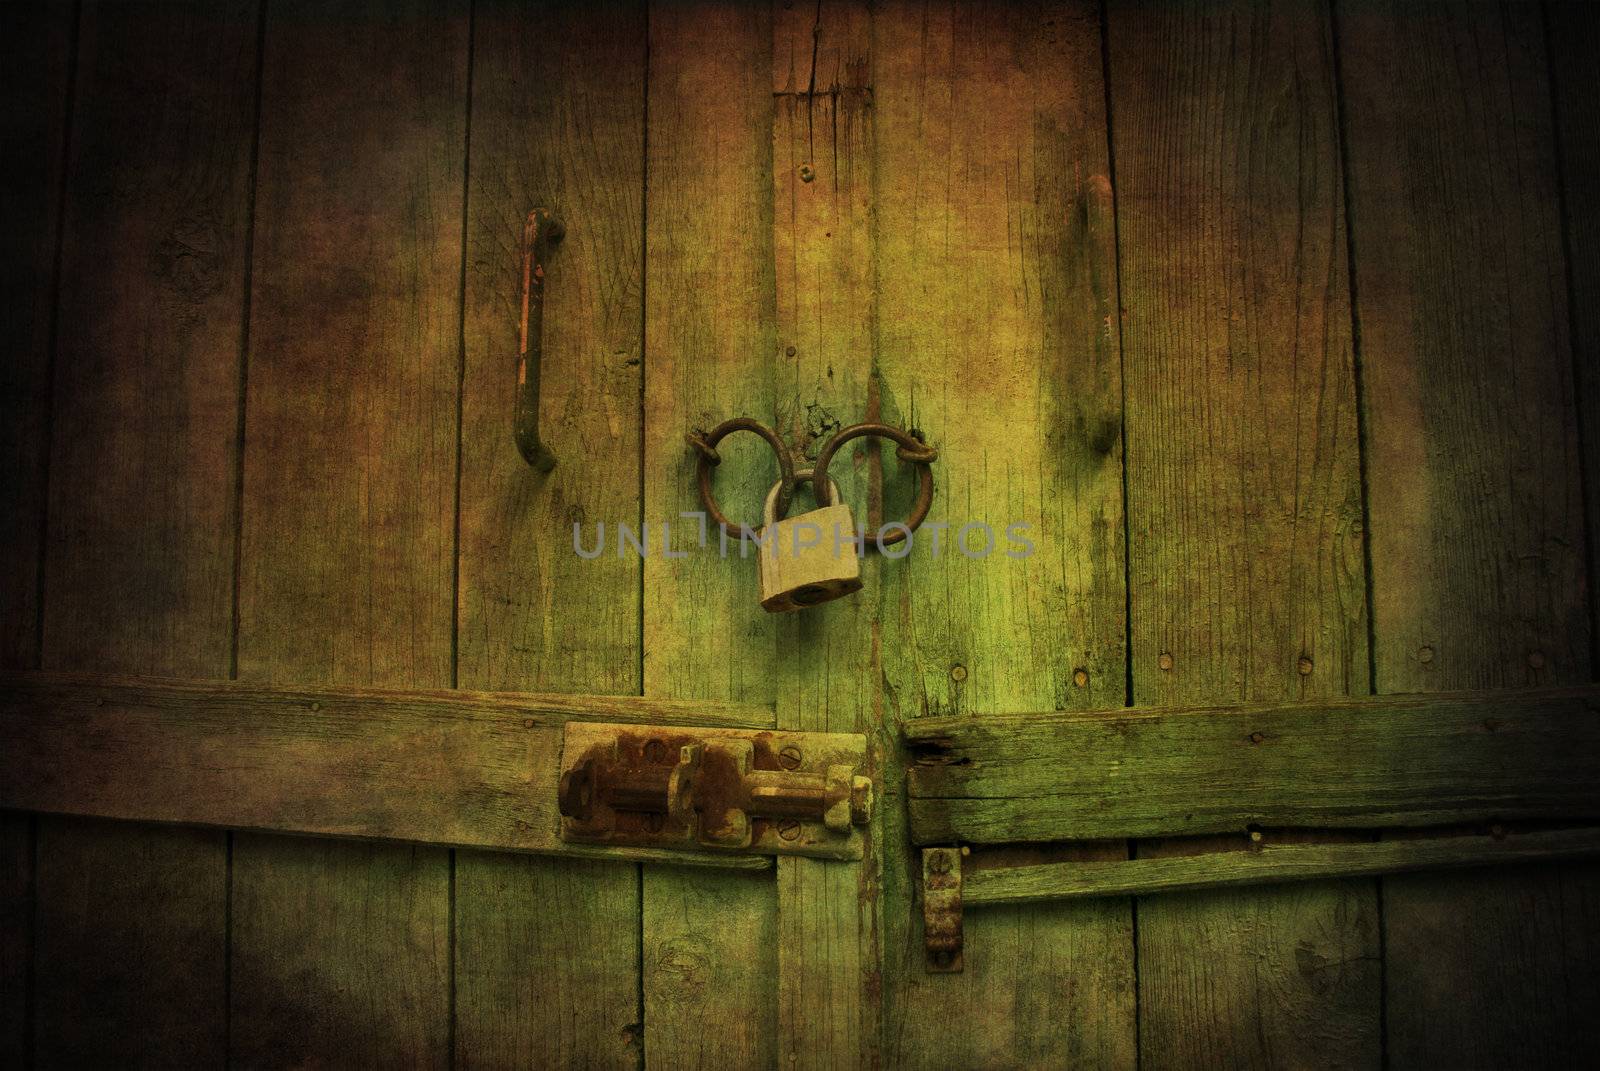 Locked wooden door with padlock by malija